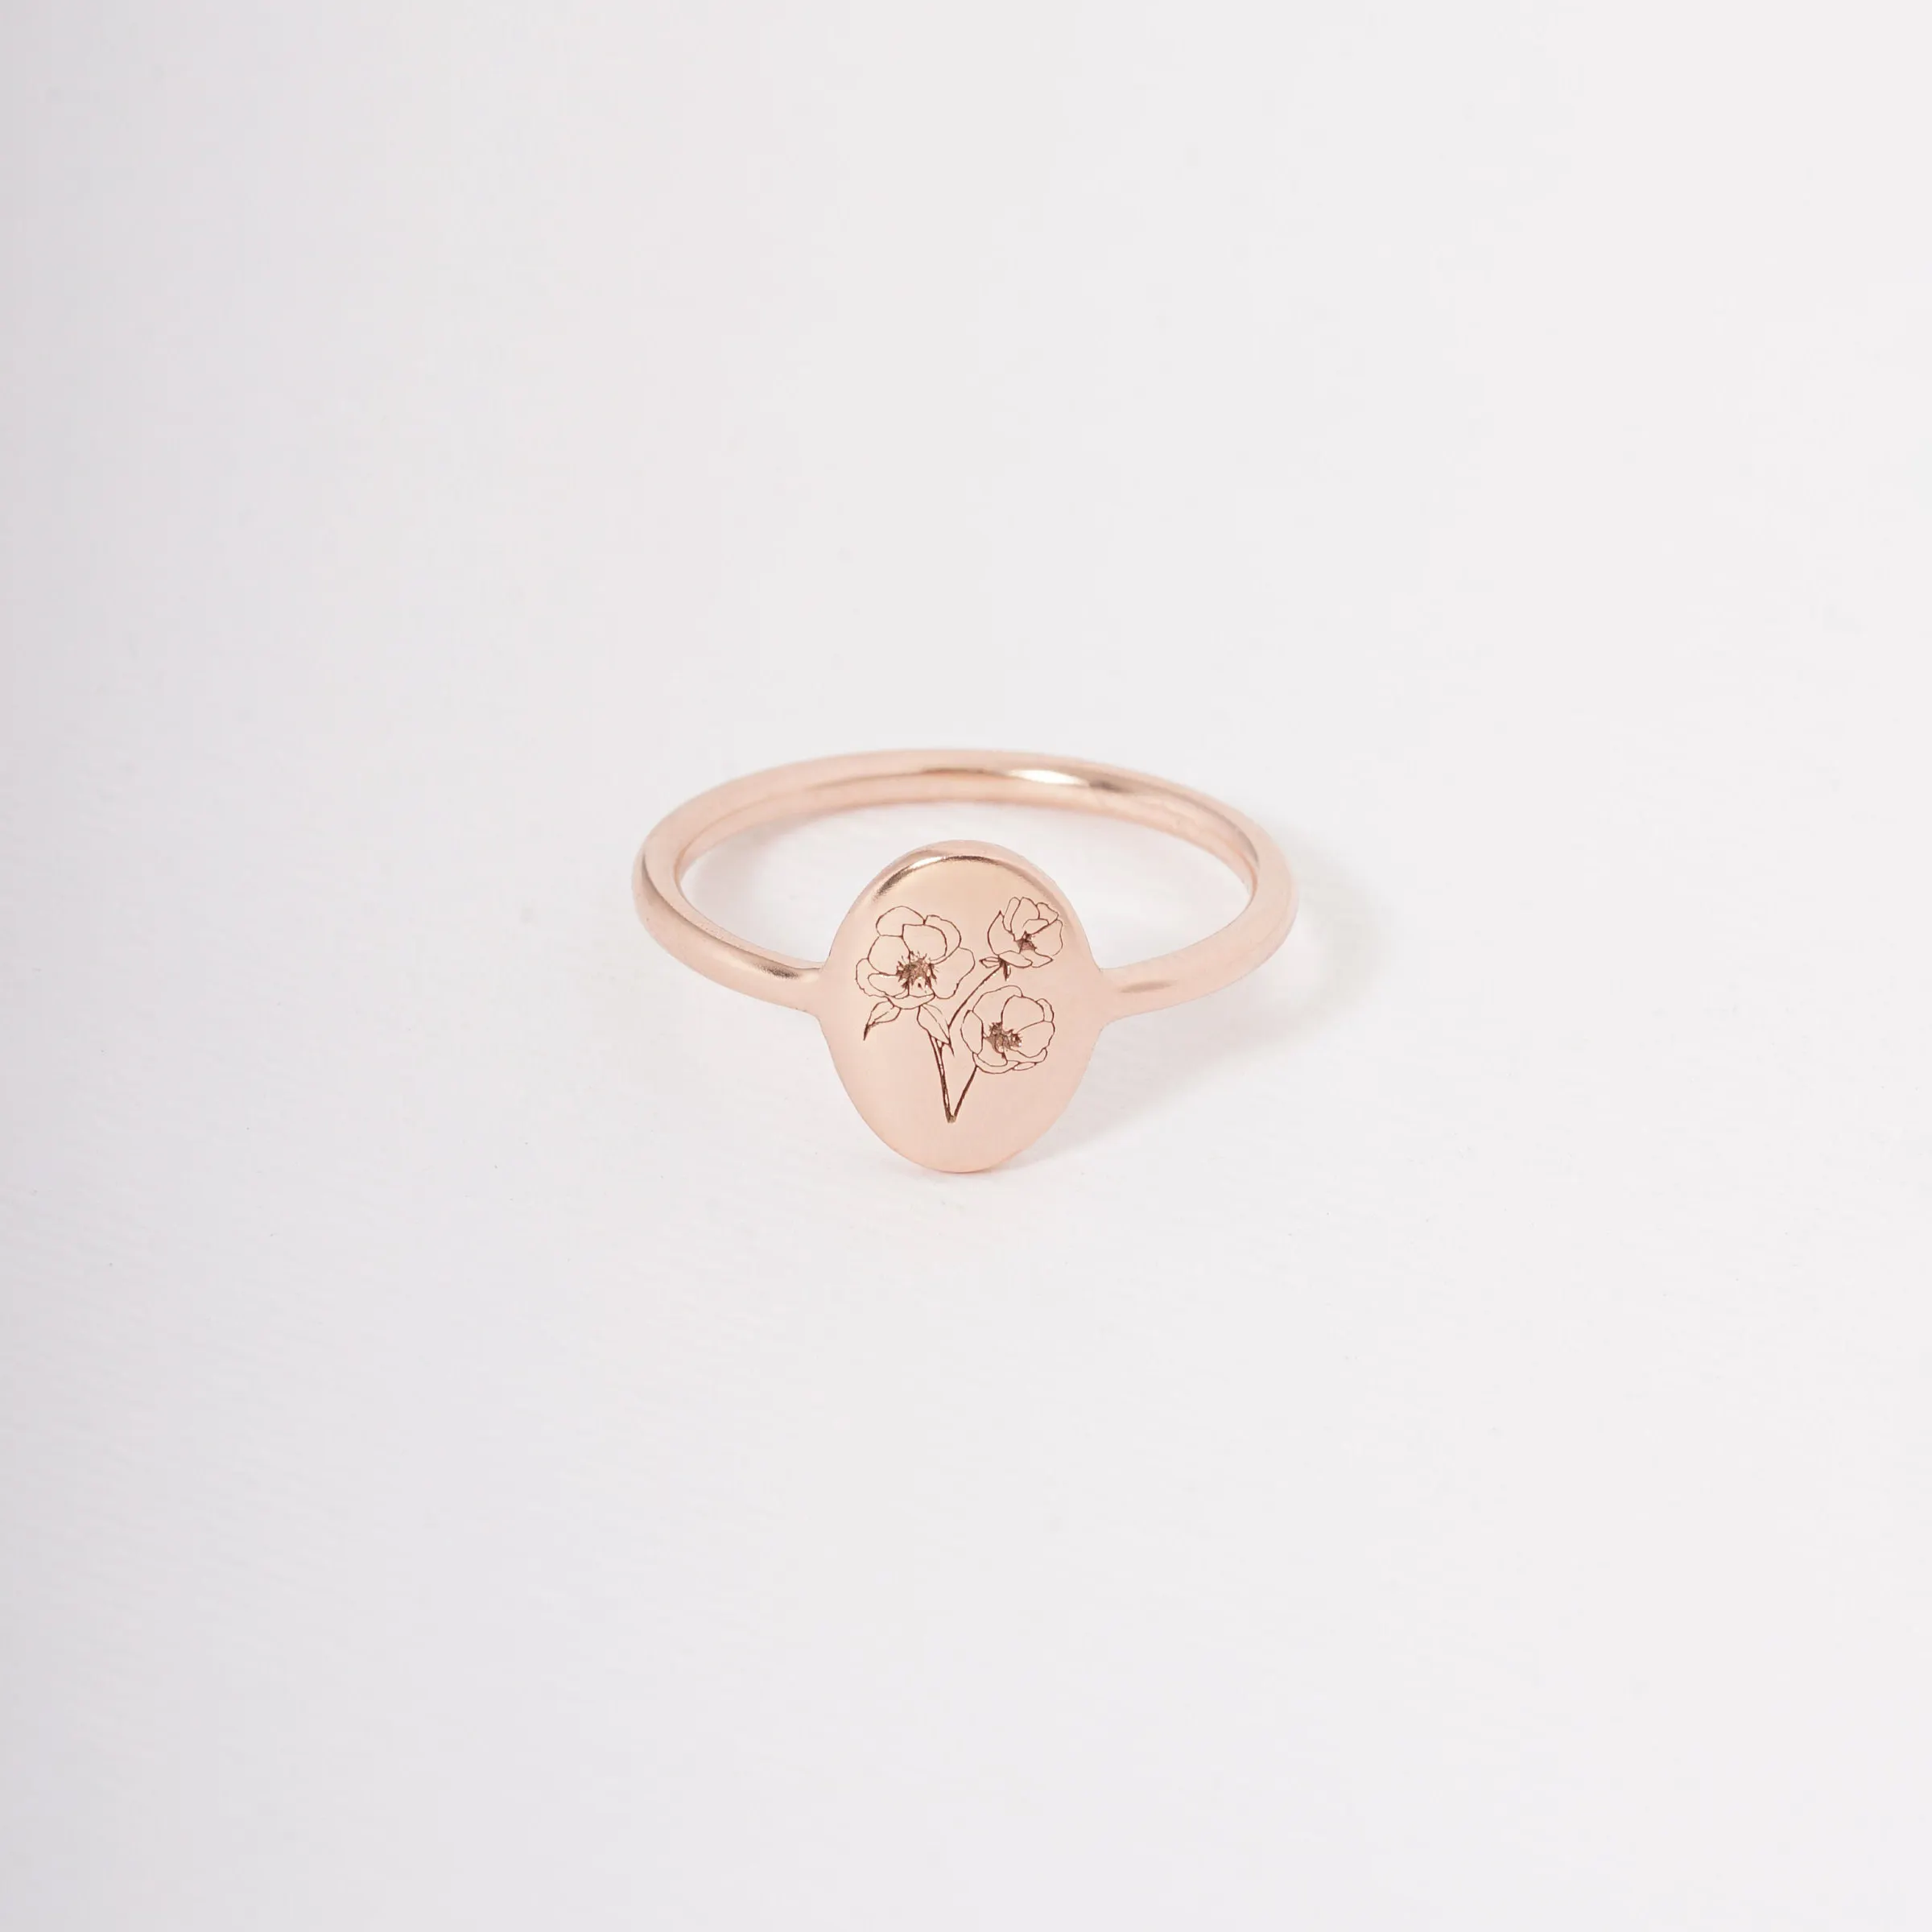 Персонализированное кольцо с родами и цветами, минималистичное штабелируемое кольцо, золотое, розовое золото, заполненное гравировкой, повседневное эффектное кольцо